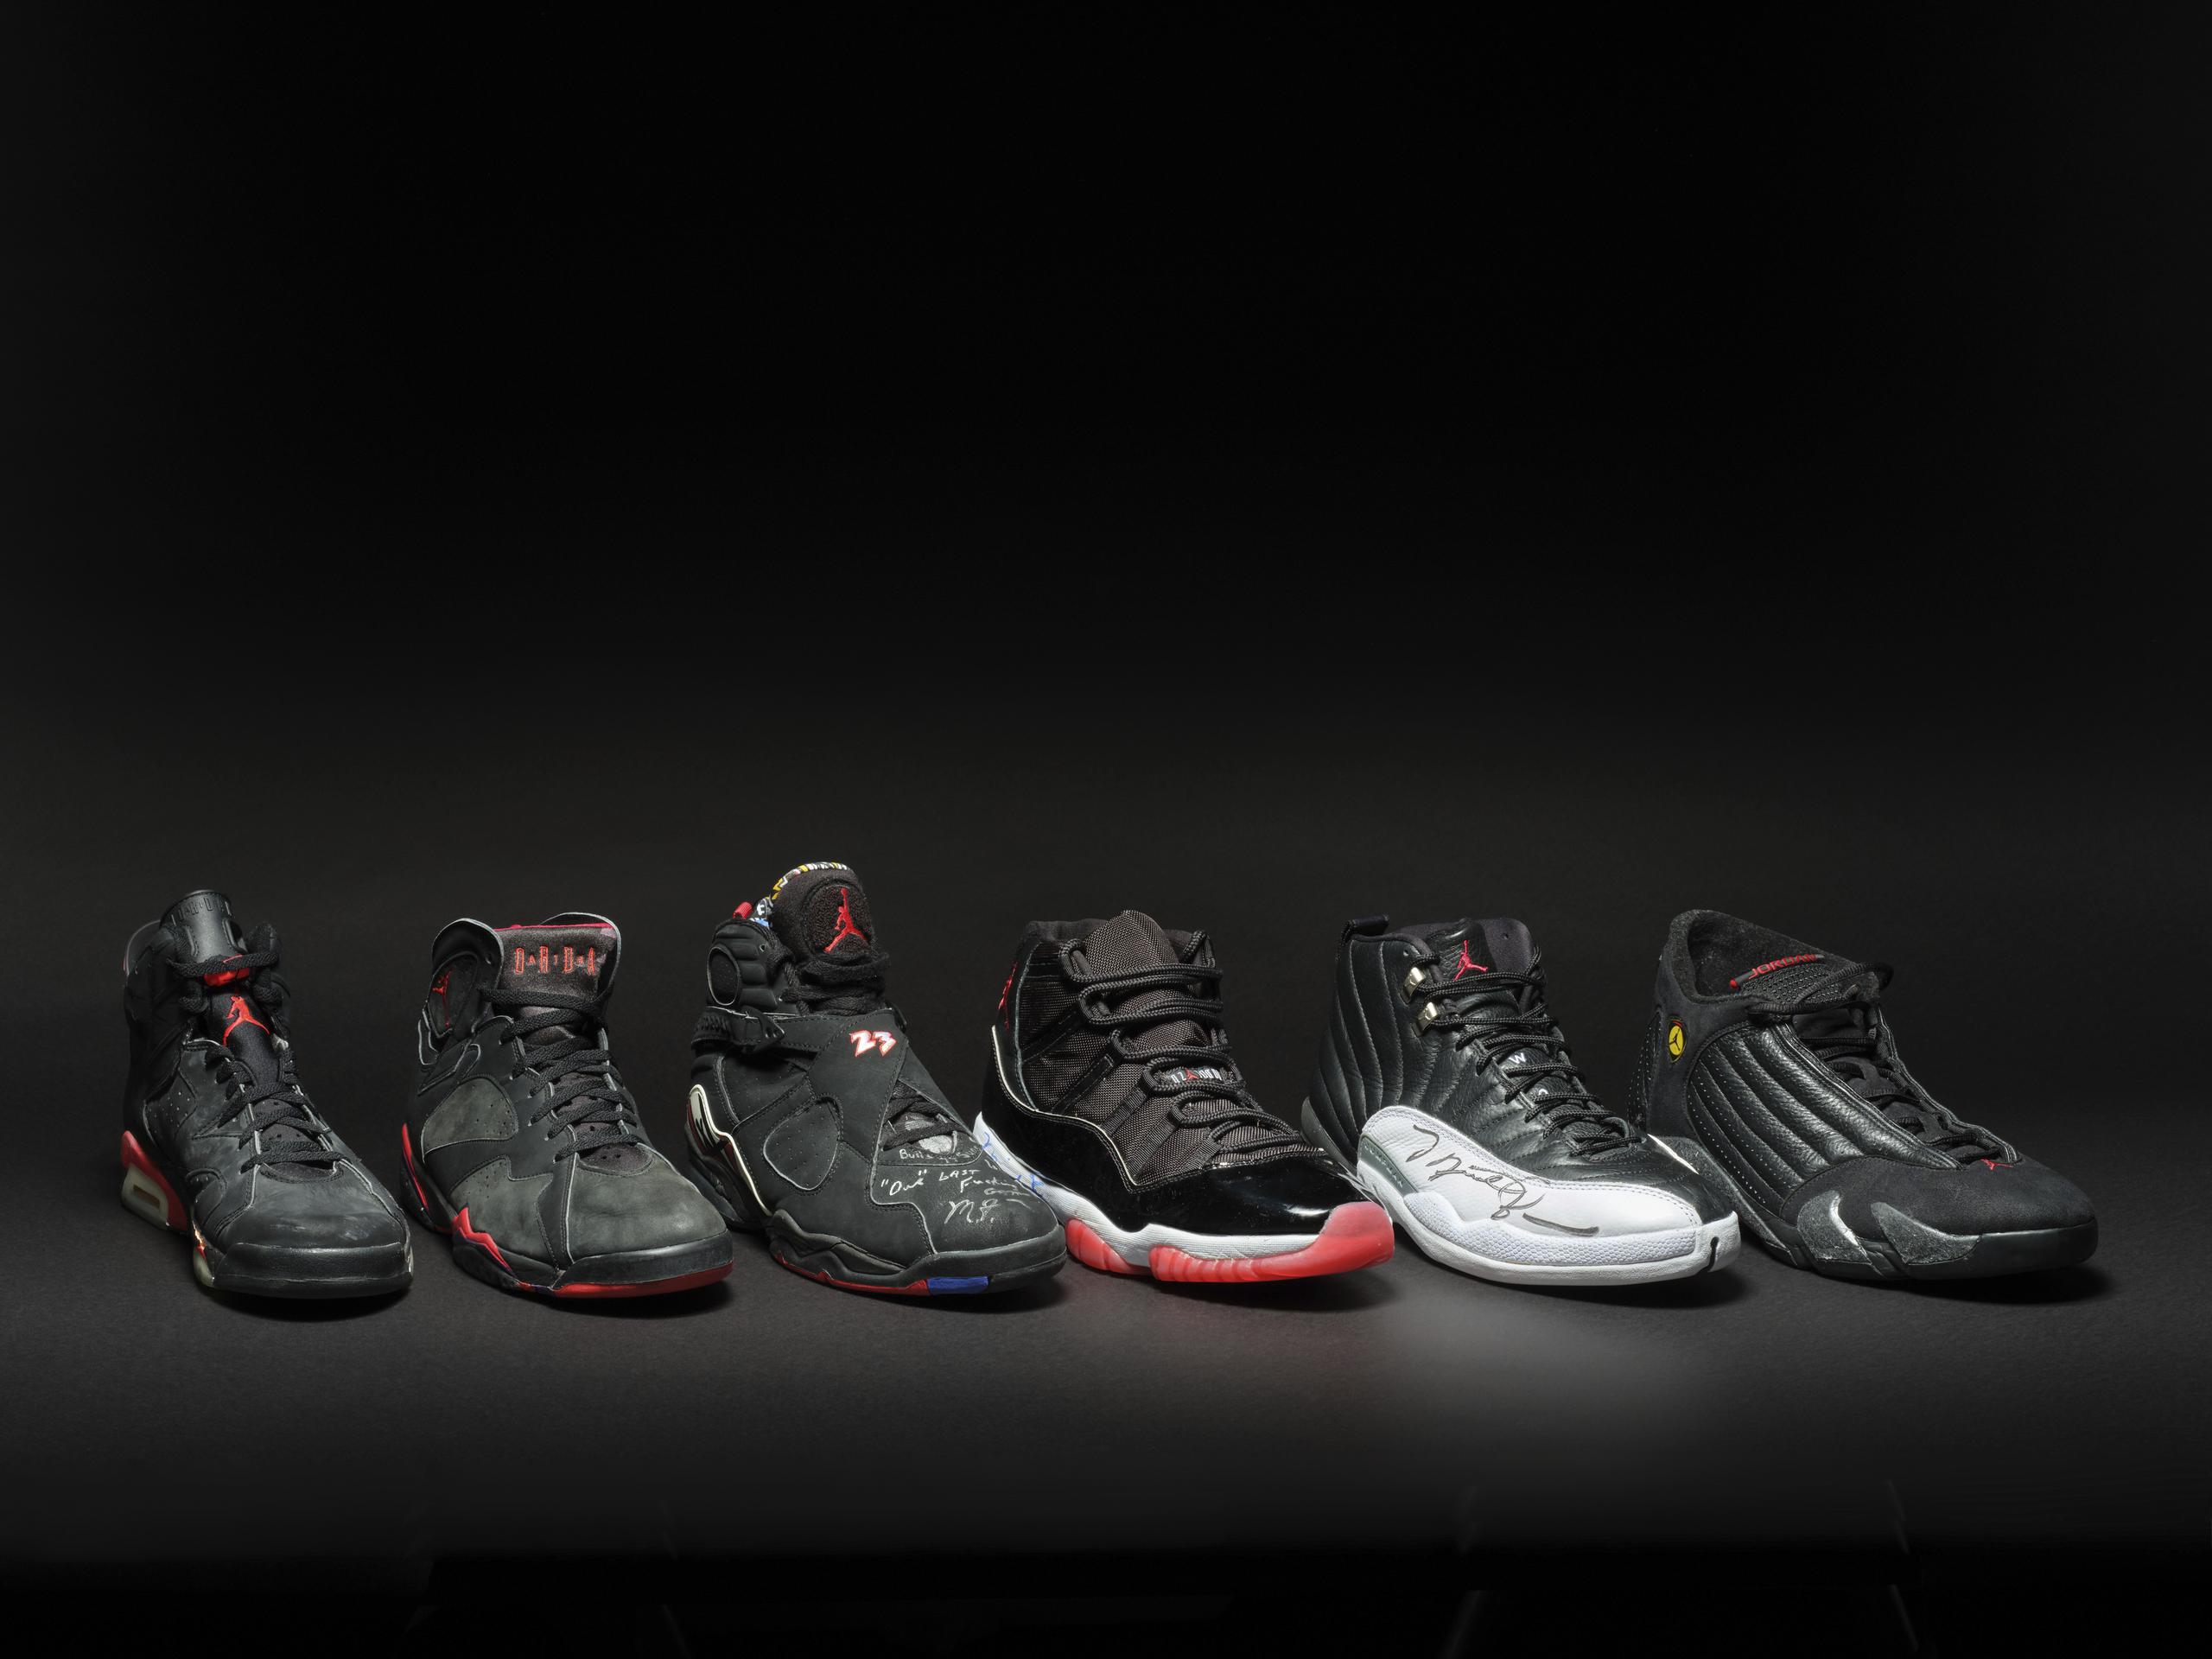 Esta imagen distribuida por Sotheby's muestra una colección de zapatos deportivo que usó Michael Jordan al conquistar seis títulos de la NBA con los Bulls de Chicago. (Courtesy of Sotheby's vía AP)